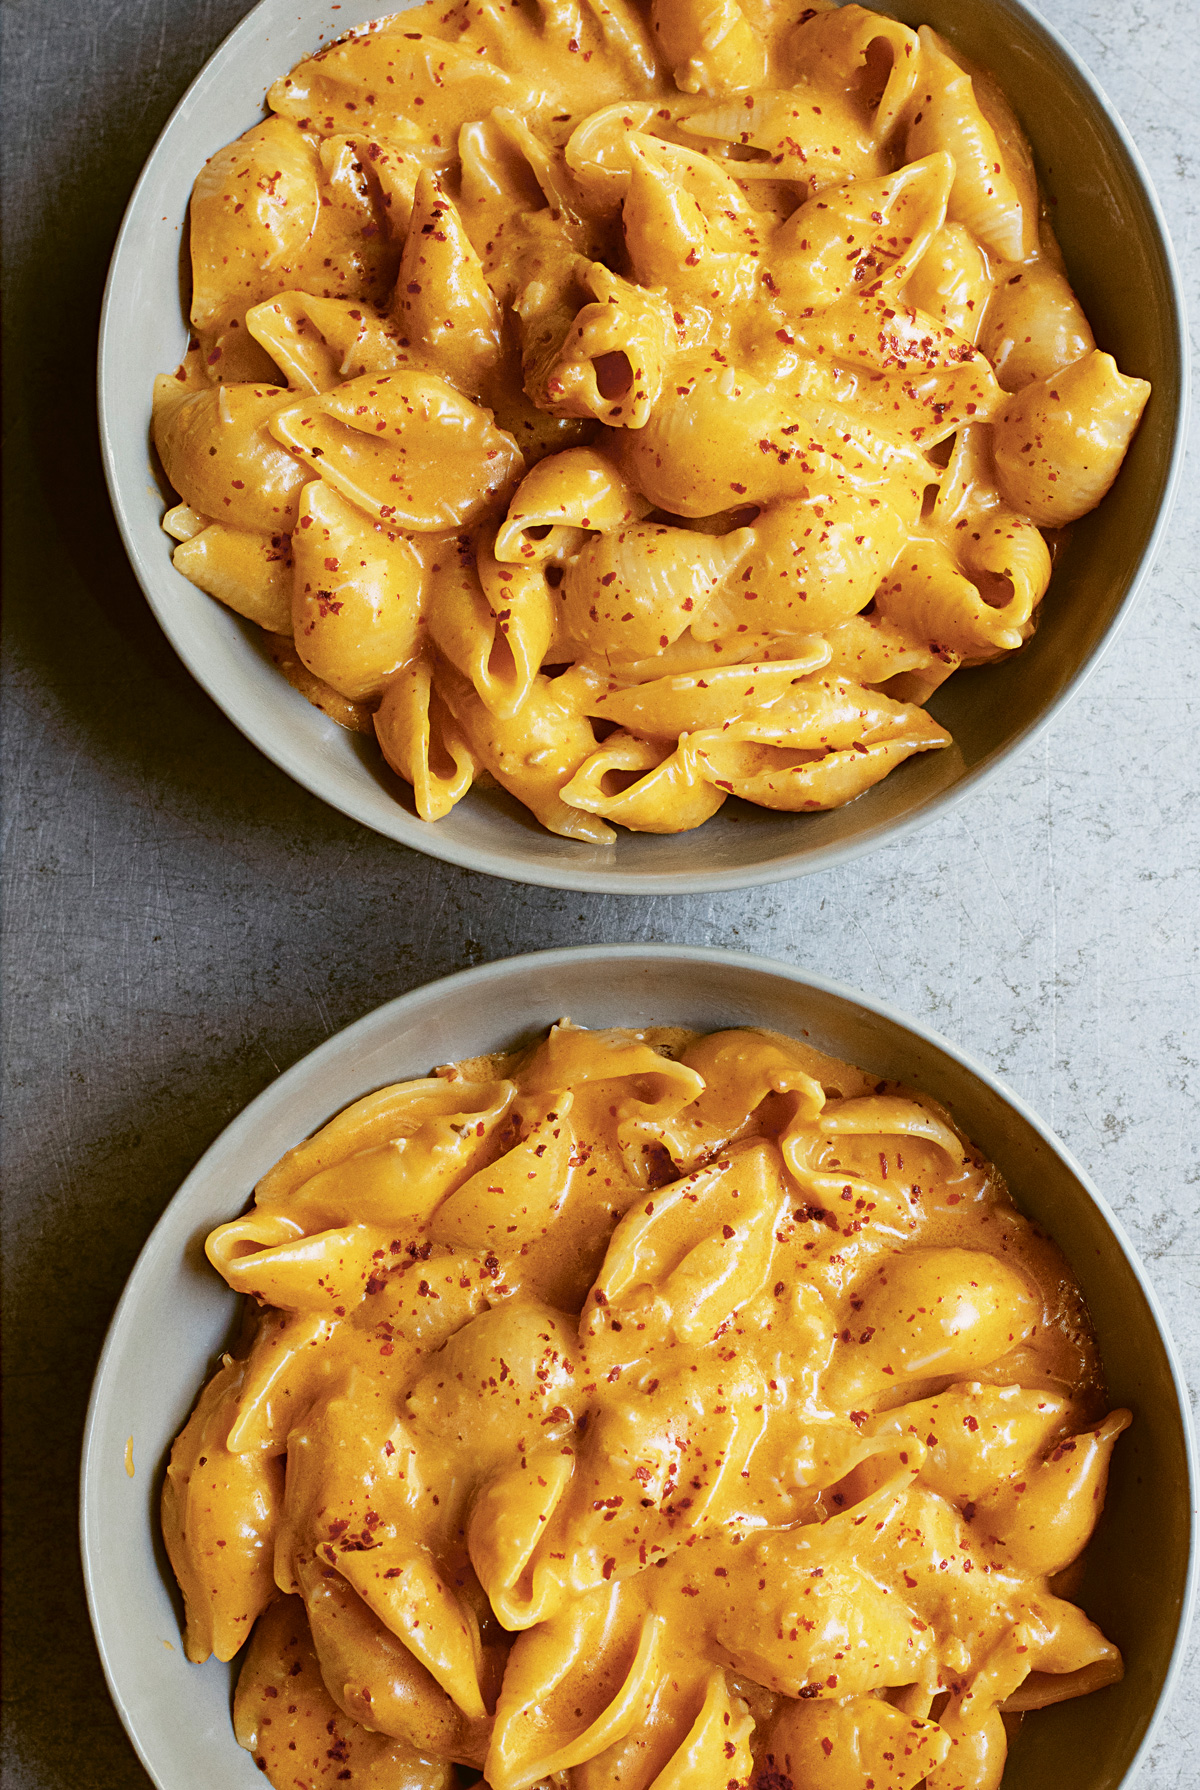 Macaroni cheese recipe - BBC Food